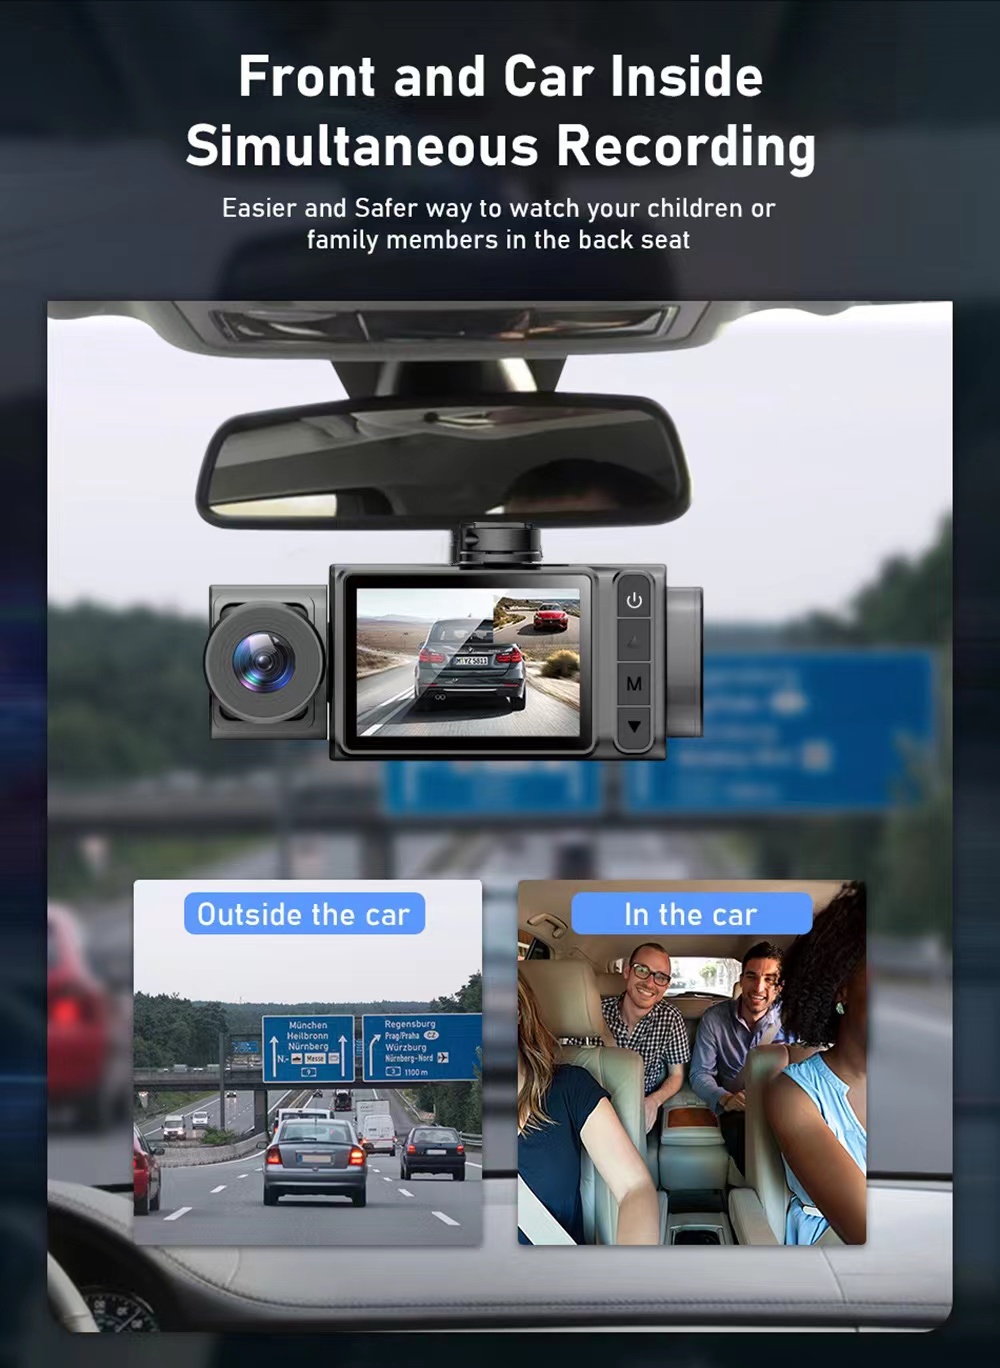 2 inç HD 1080p 3 lens S11 Araba DVR Video Kaydedici Dash Cam Arka Kamera 130 Derece Geniş Açılı Ultra Çözünürlük Önden Arka Kamera Hareket Algılama